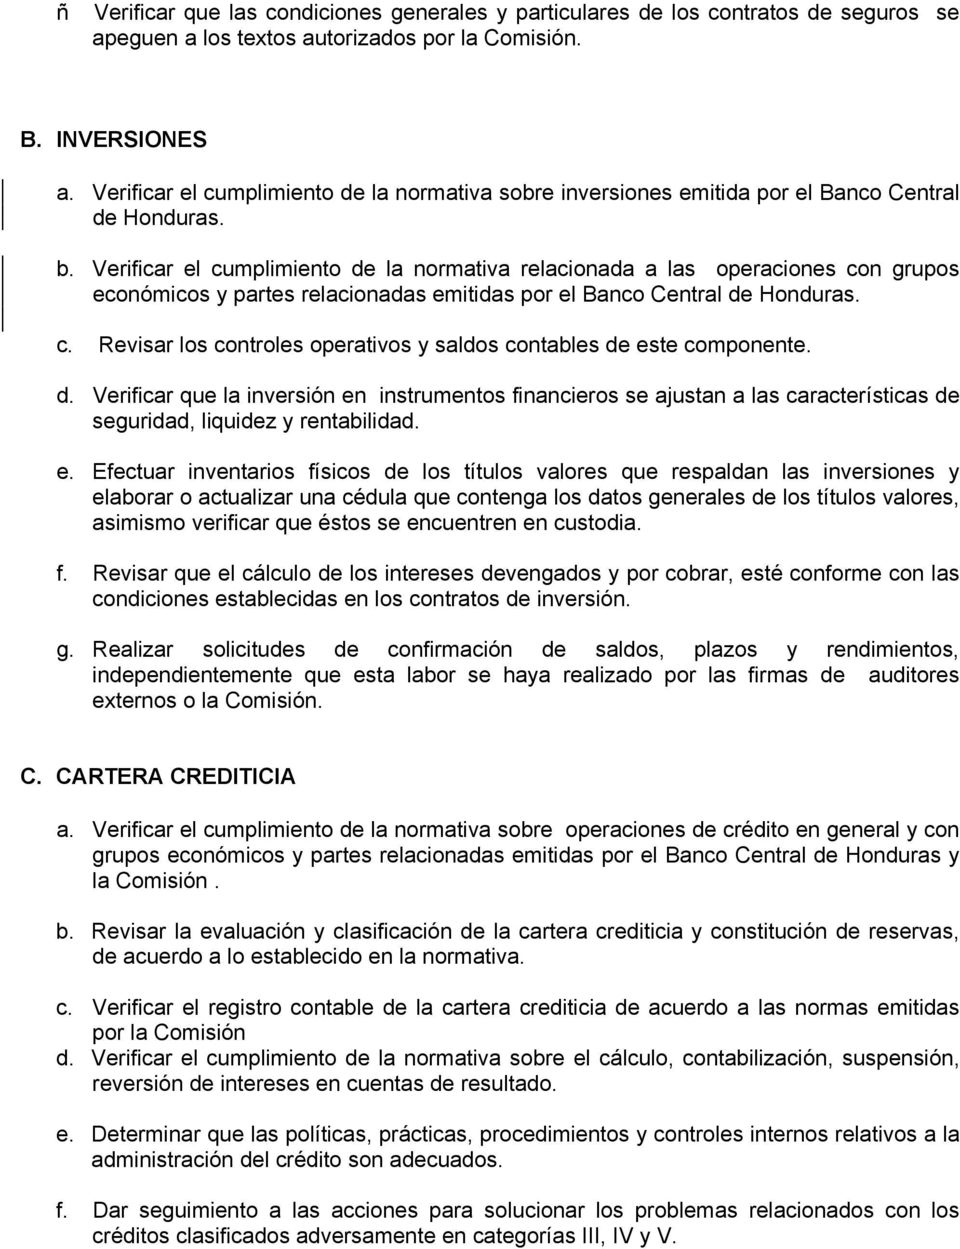 Verificar el cumplimiento de la normativa relacionada a las operaciones con grupos económicos y partes relacionadas emitidas por el Banco Central de Honduras. c. Revisar los controles operativos y saldos contables de este componente.